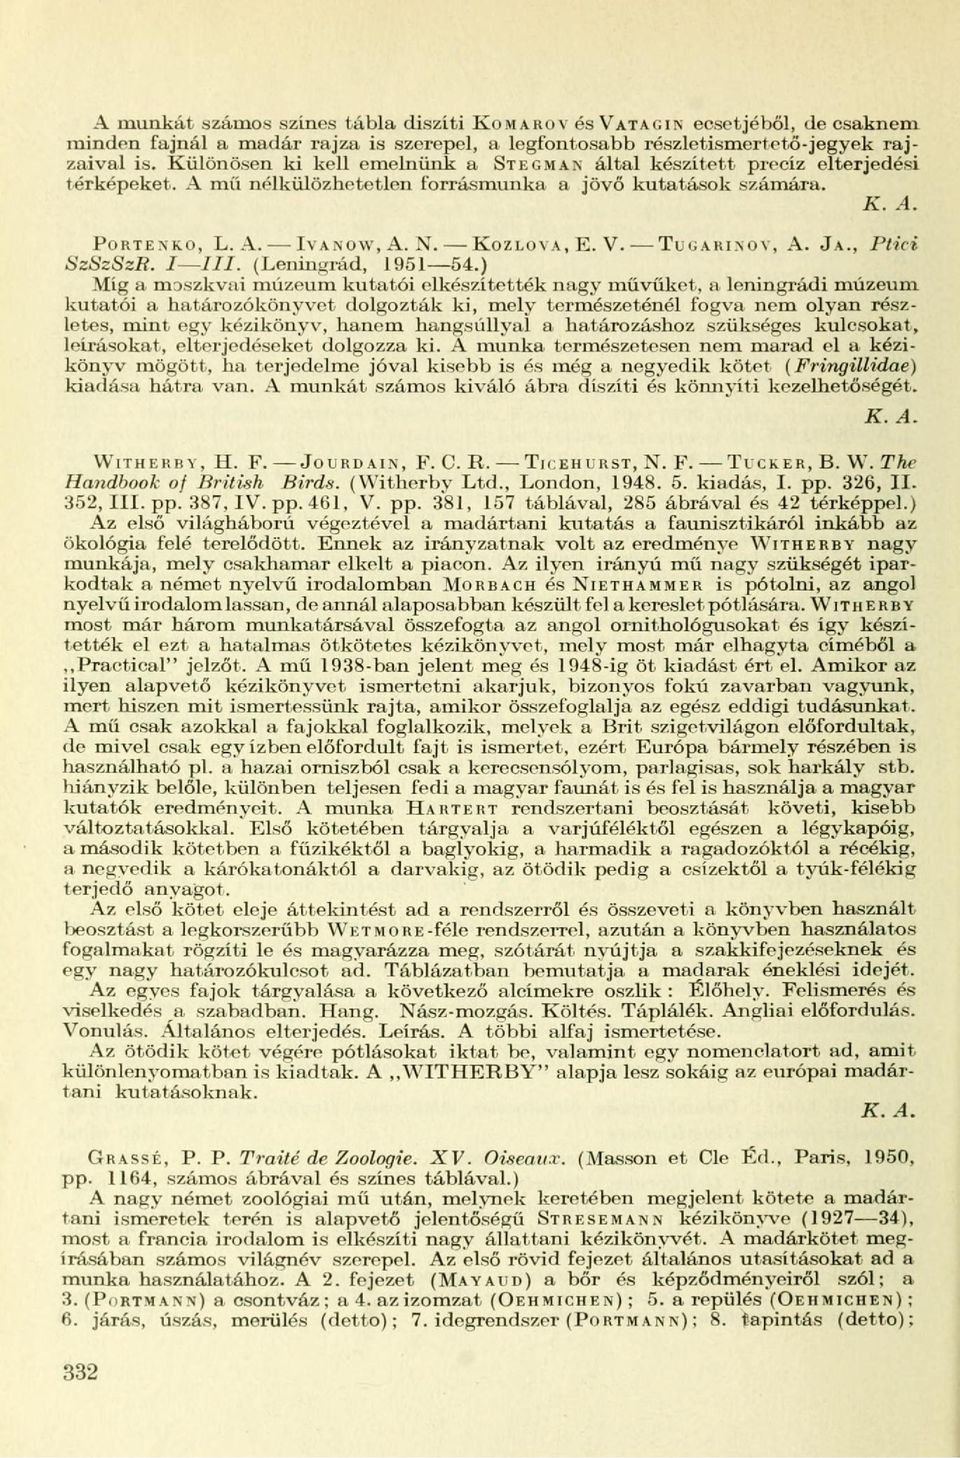 NOY, A. JA., Ptici SzSzSzR. I JII. (Leningrád, 1951 54.